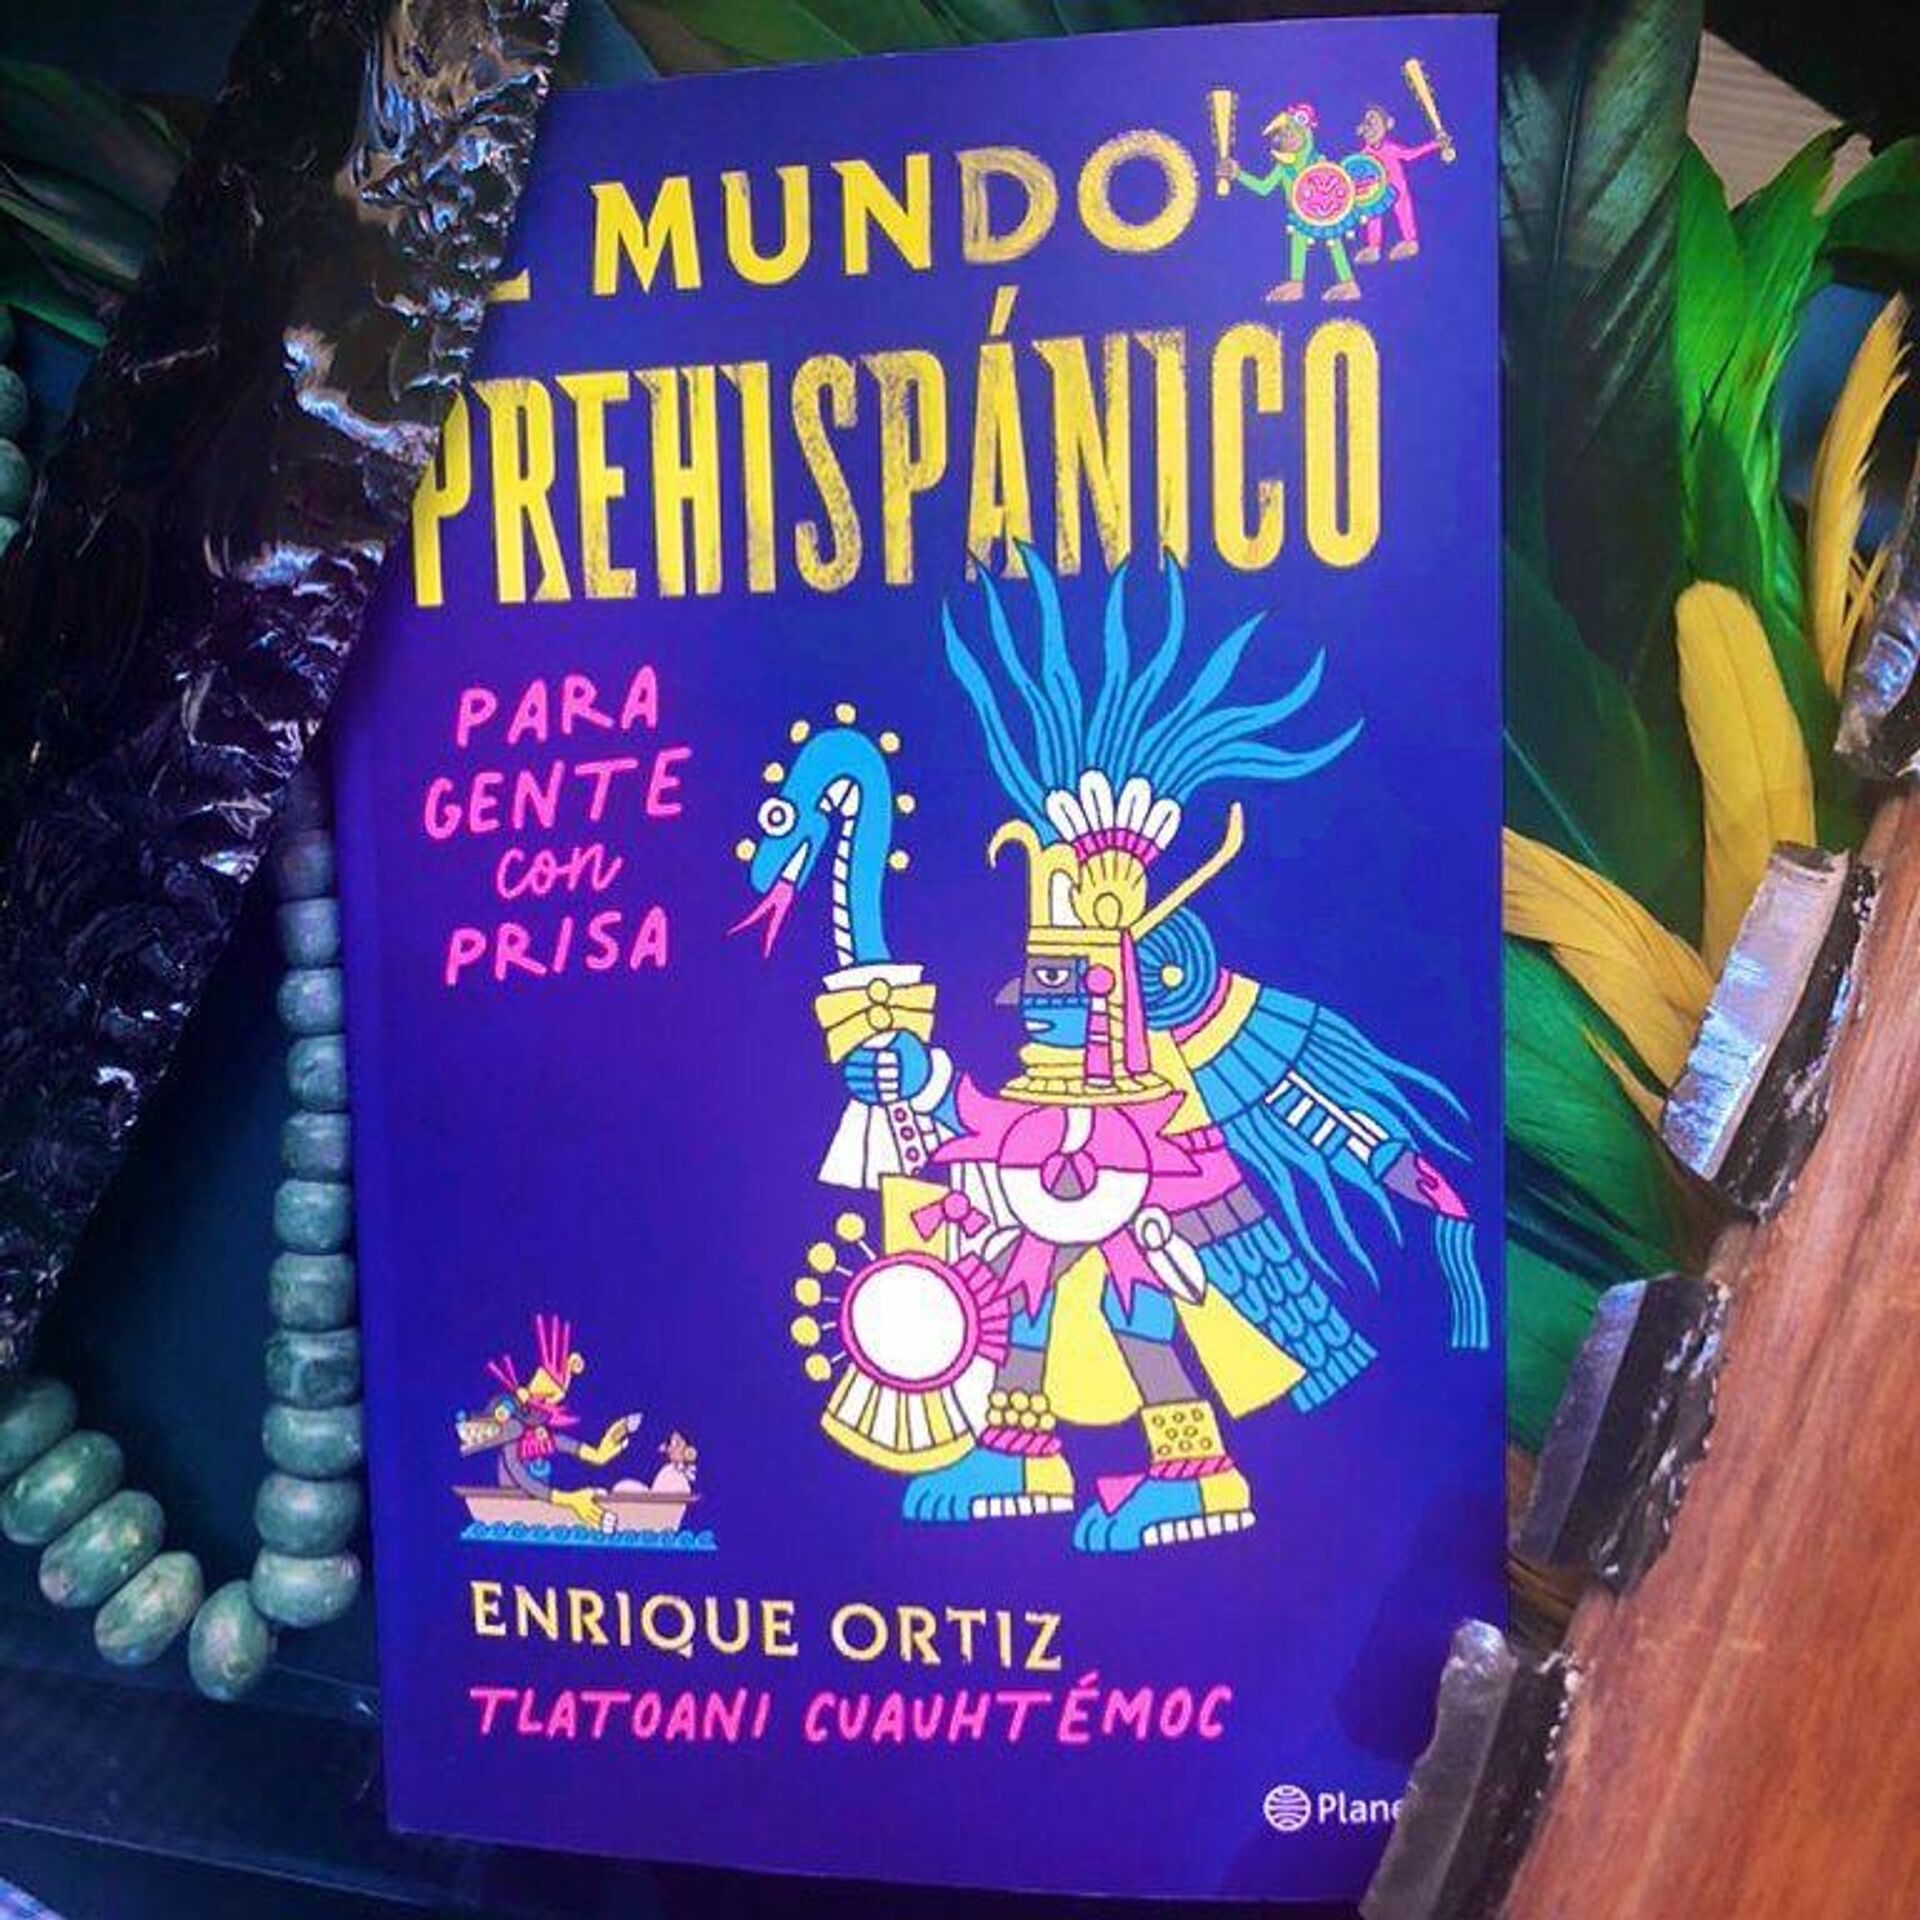 El mundo prehispánico para gente con prisa, Enrique Ortiz - Sputnik Mundo, 1920, 13.08.2021